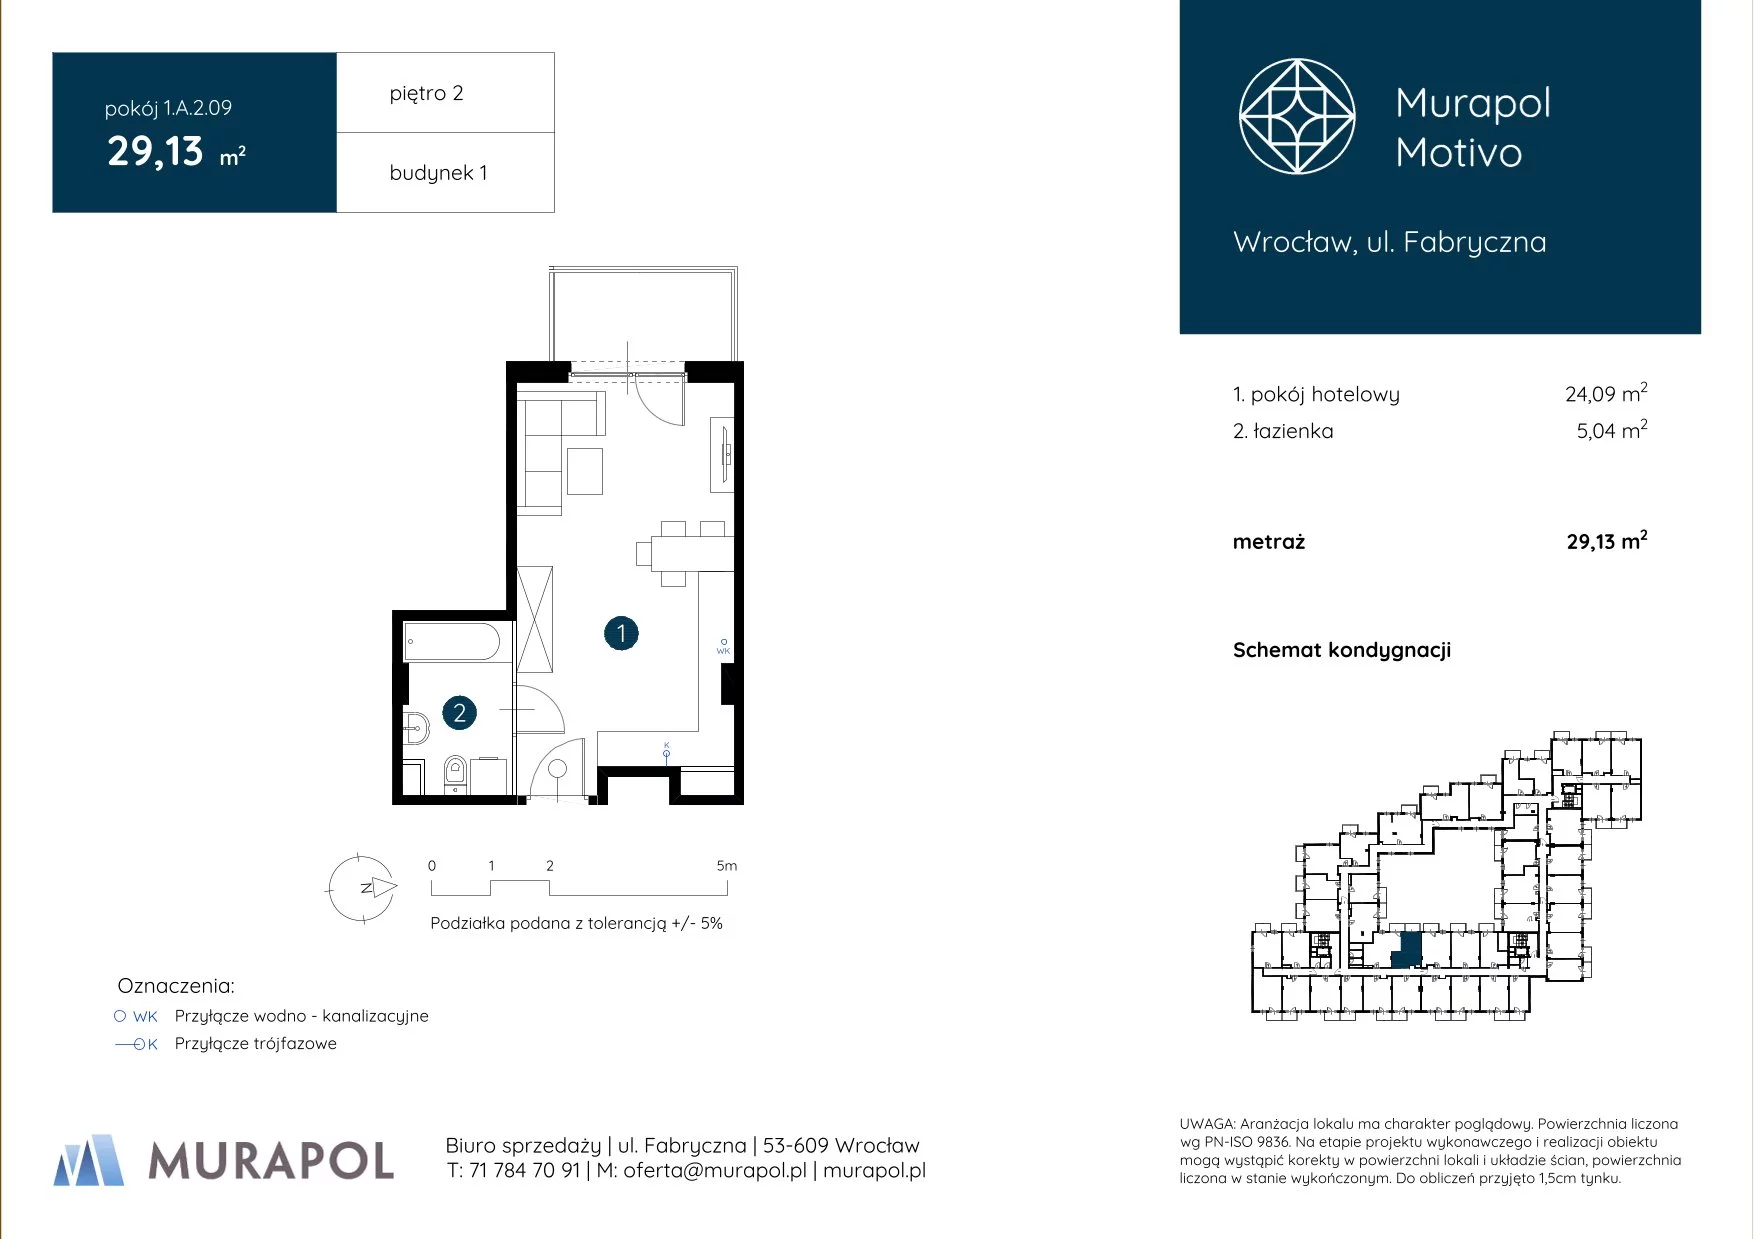 Apartament inwestycyjny 29,13 m², piętro 2, oferta nr 1.A.2.09, Murapol Motivo, Wrocław, Muchobór Mały, Fabryczna, ul. Fabryczna